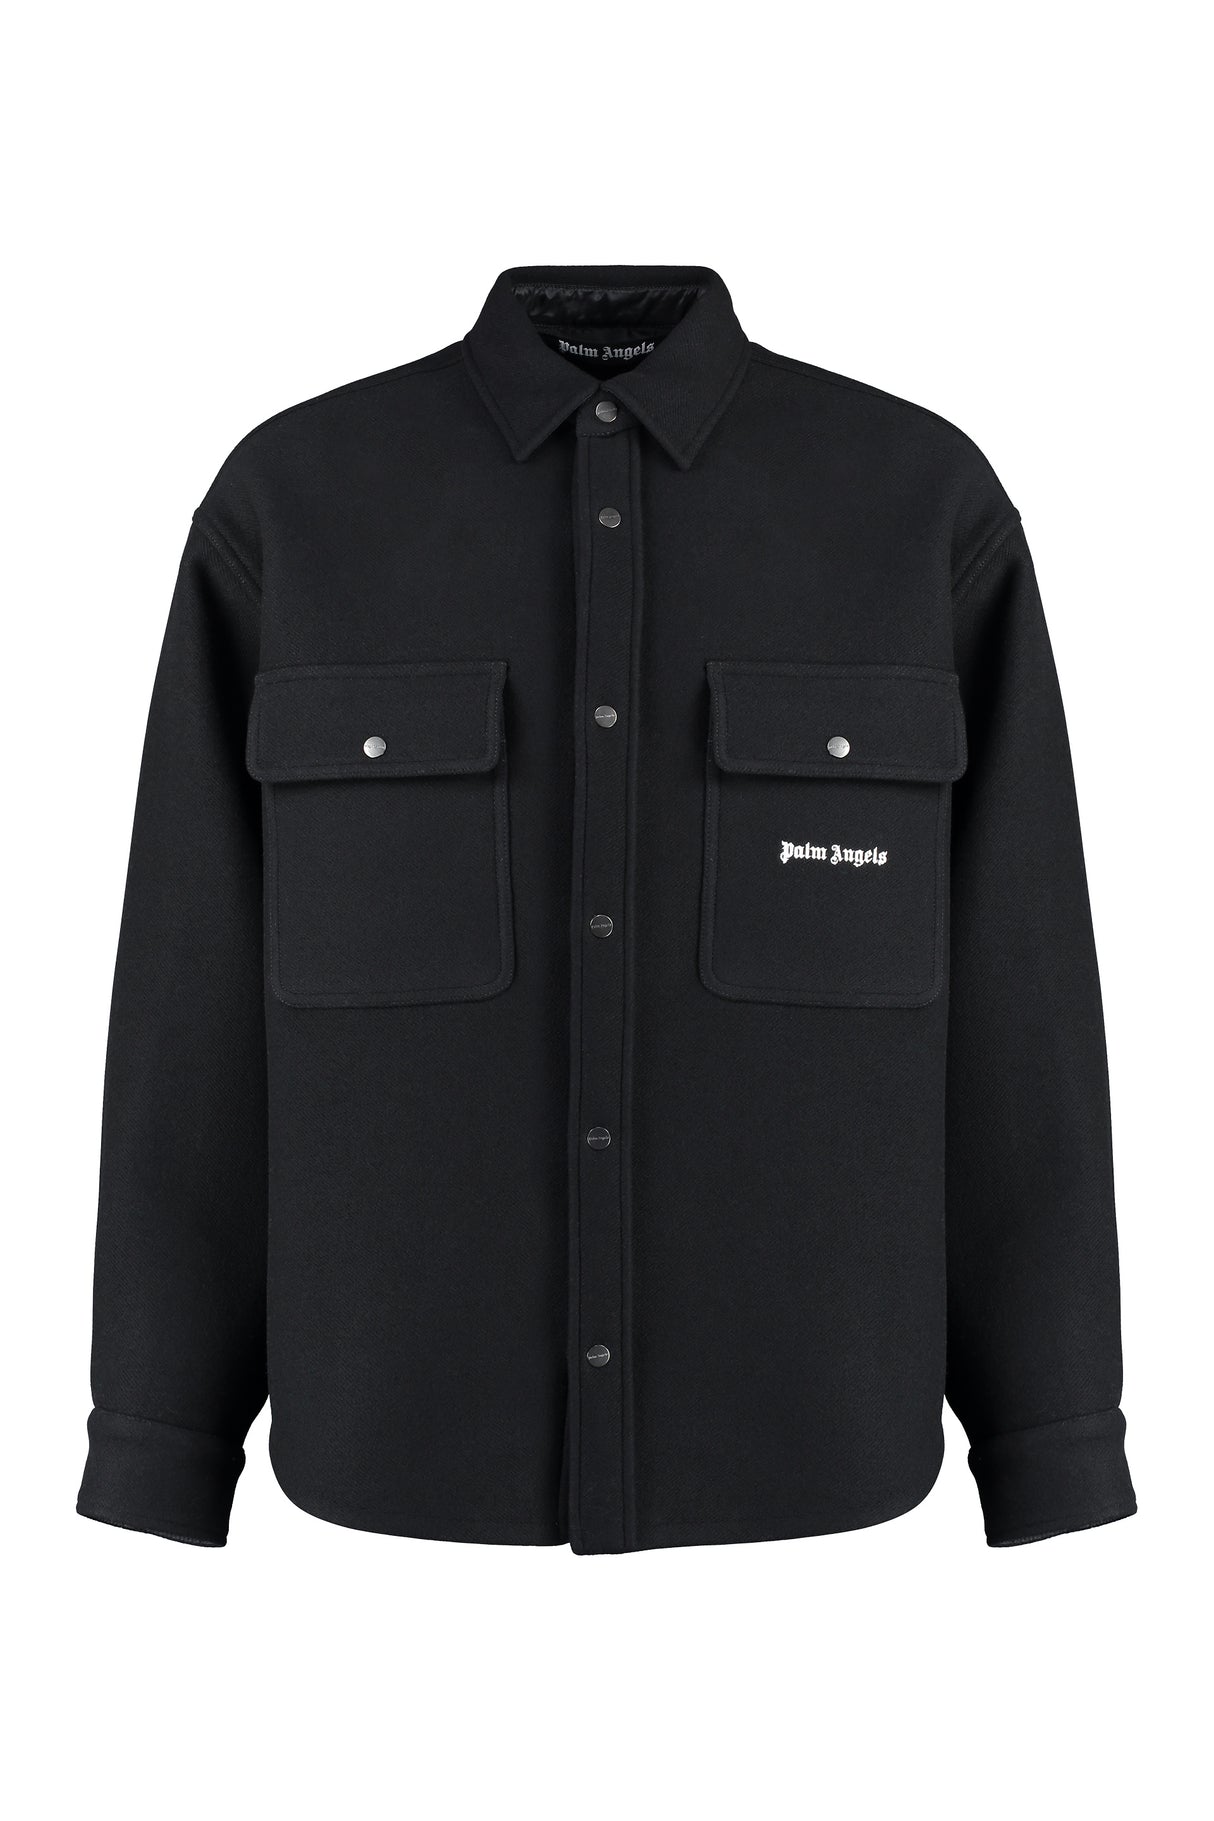 黒のバージンウールオーバーシャツ - クラシックな襟、2つのボタンポケット、オーバーサイズのフィット